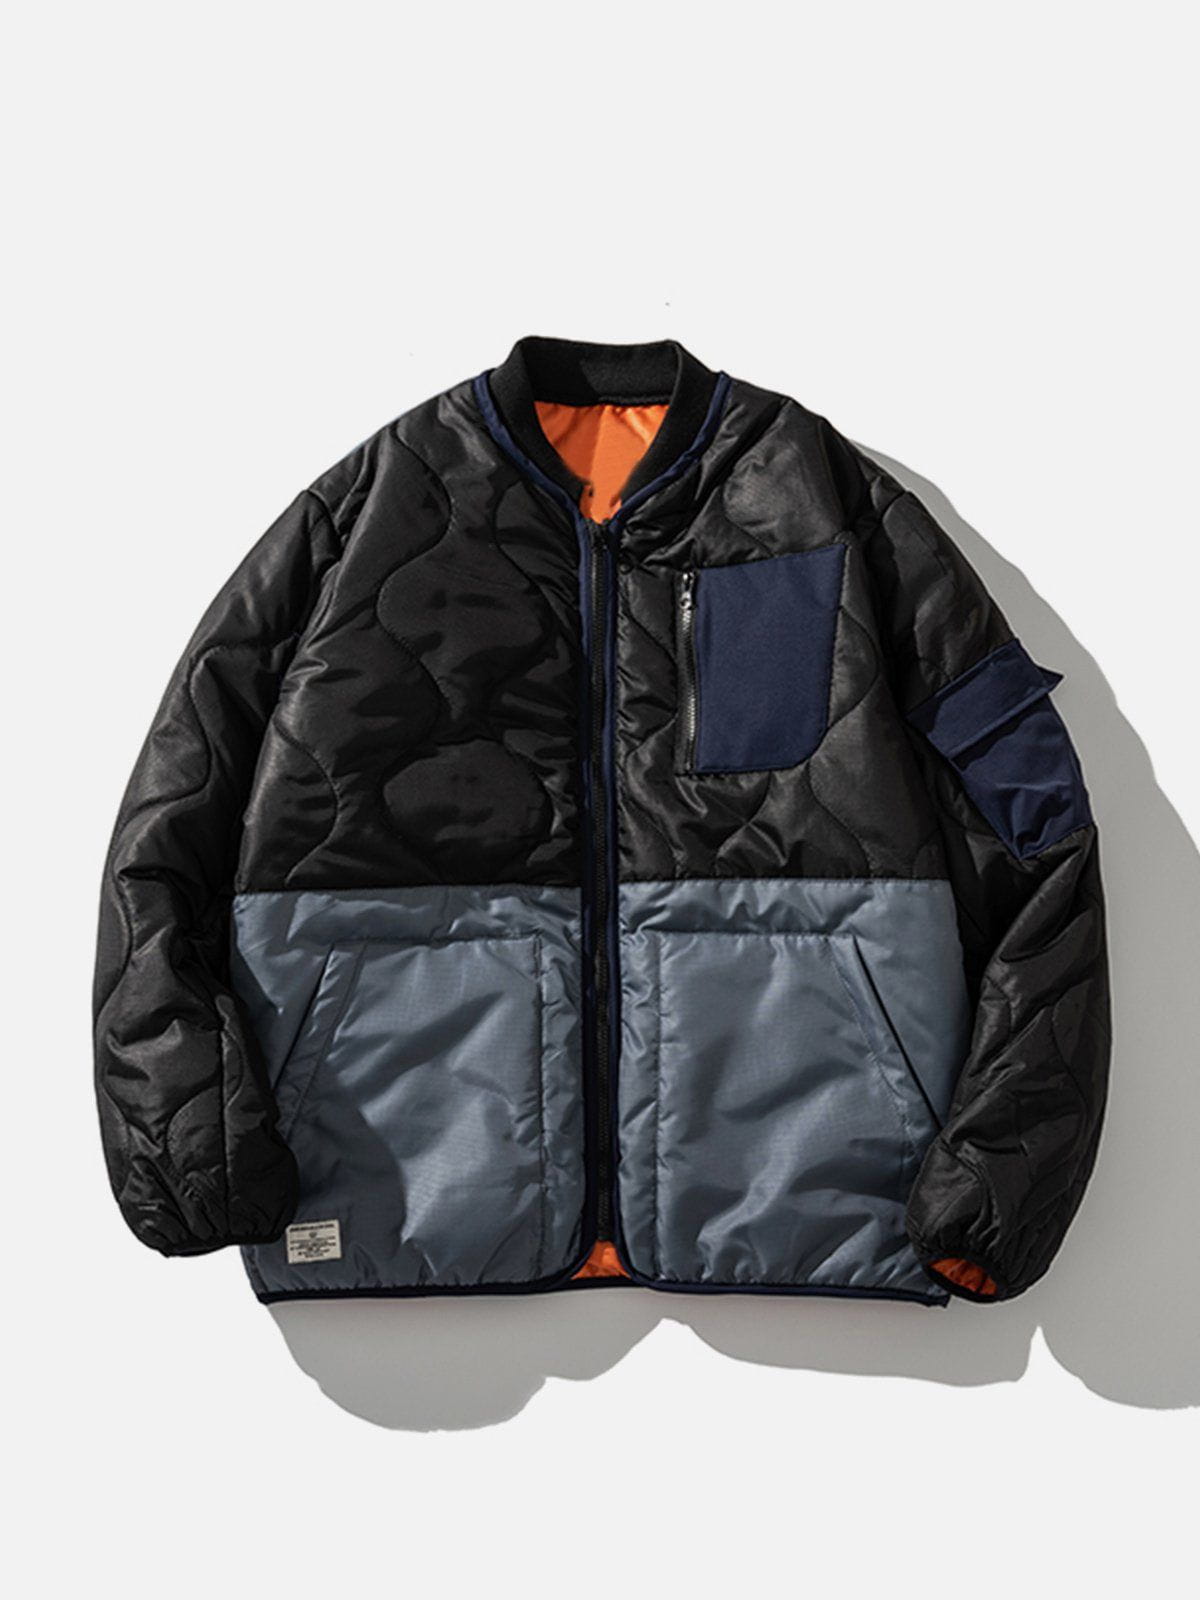 Sneakerland™ - Vintage Splicing Winter Coat